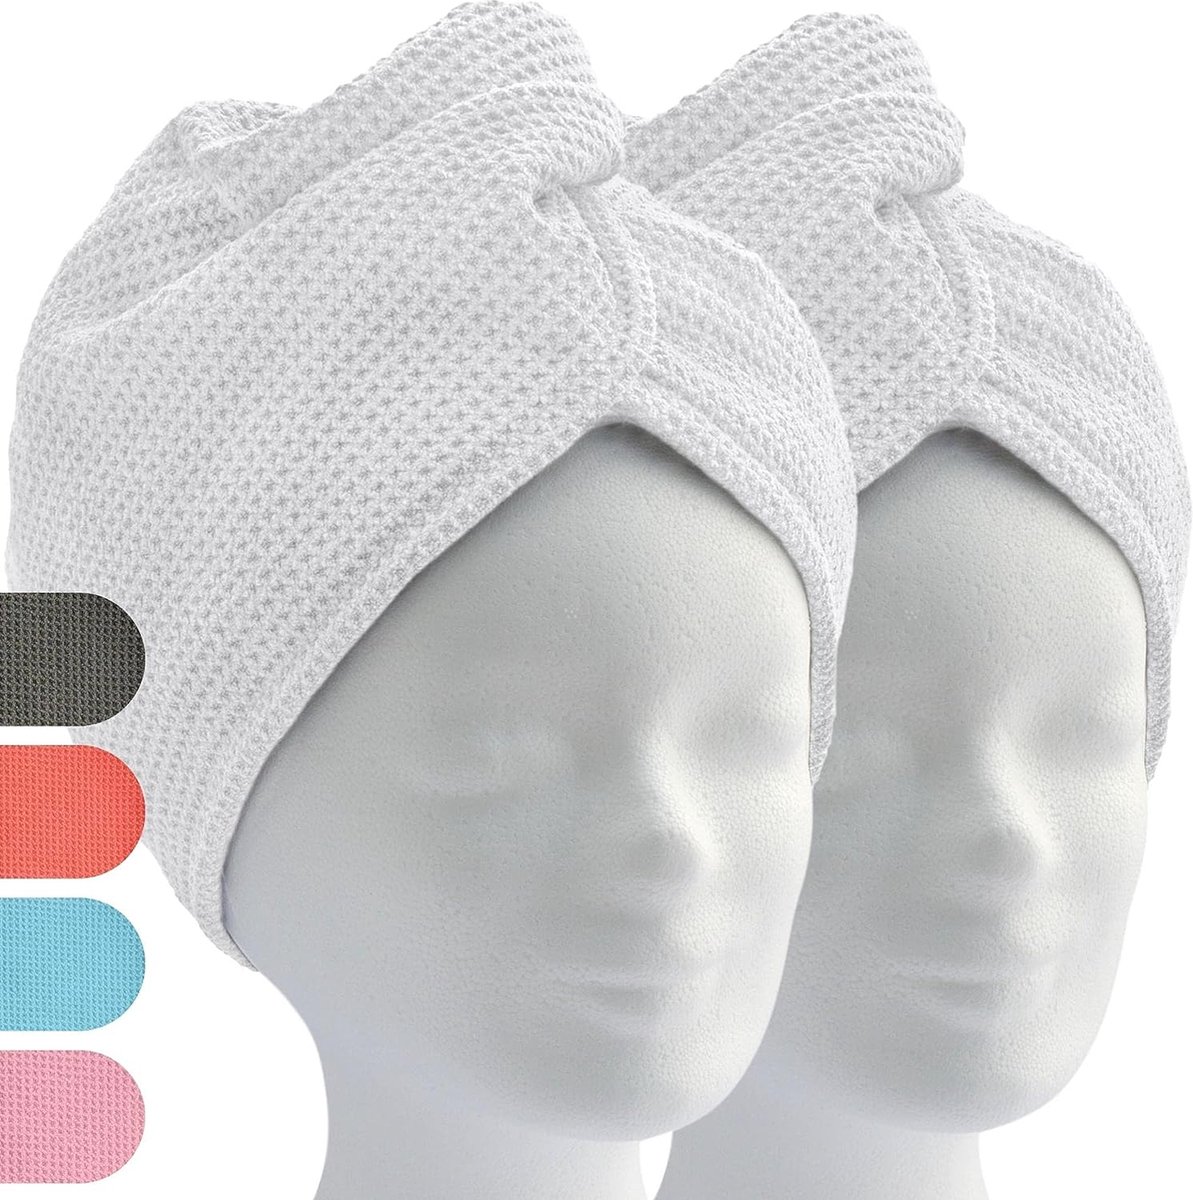 haartulband, tulband handdoek met knoop (2 stuks, wit) microvezel handdoek voor hoofd en lang haar